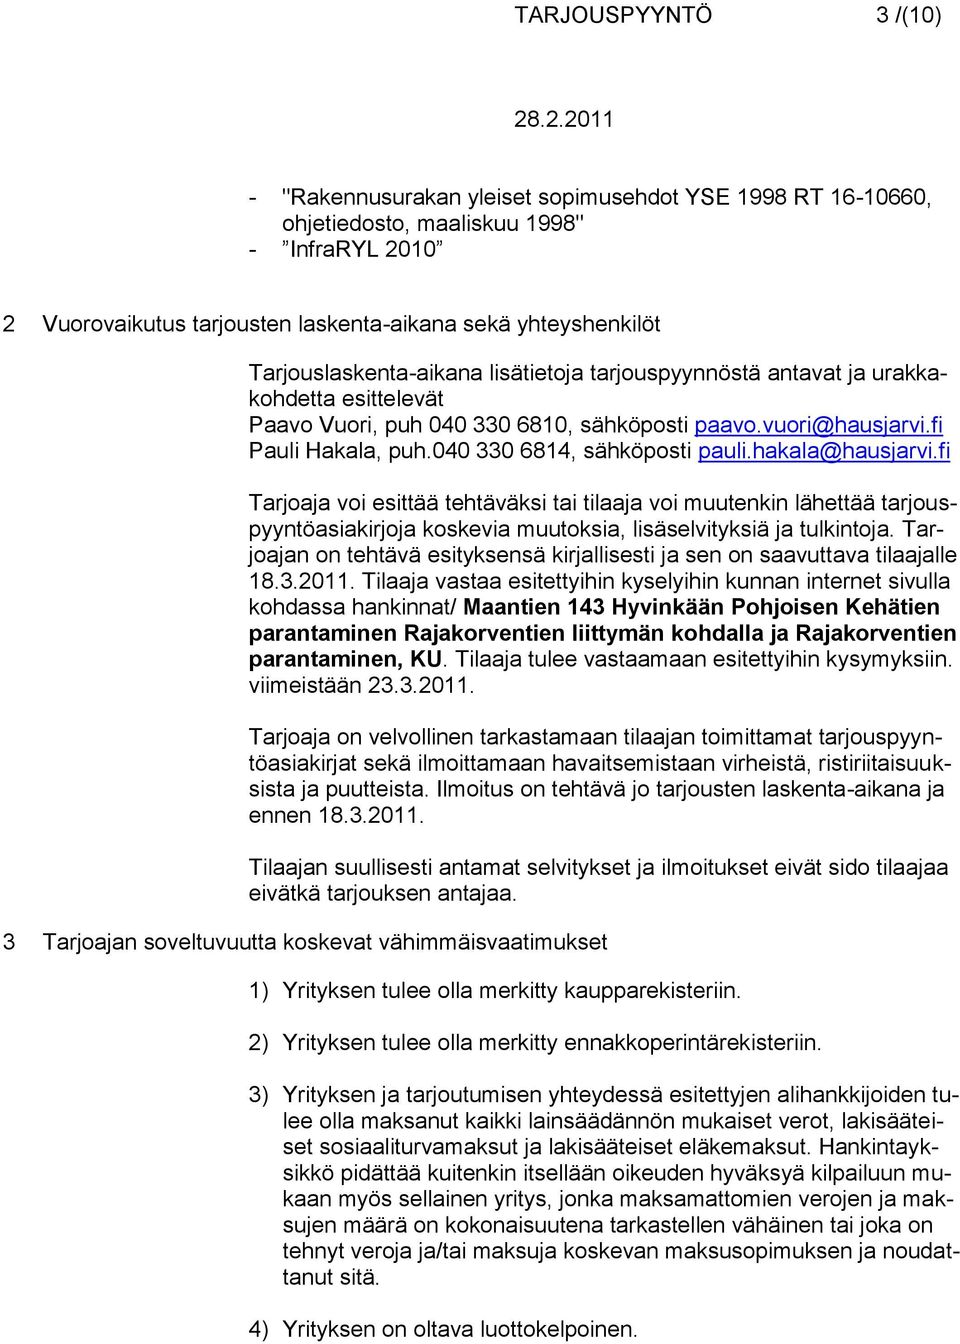 040 330 6814, sähköposti pauli.hakala@hausjarvi.fi Tarjoaja voi esittää tehtäväksi tai tilaaja voi muutenkin lähettää tarjouspyyntöasiakirjoja koskevia muutoksia, lisäselvityksiä ja tulkintoja.